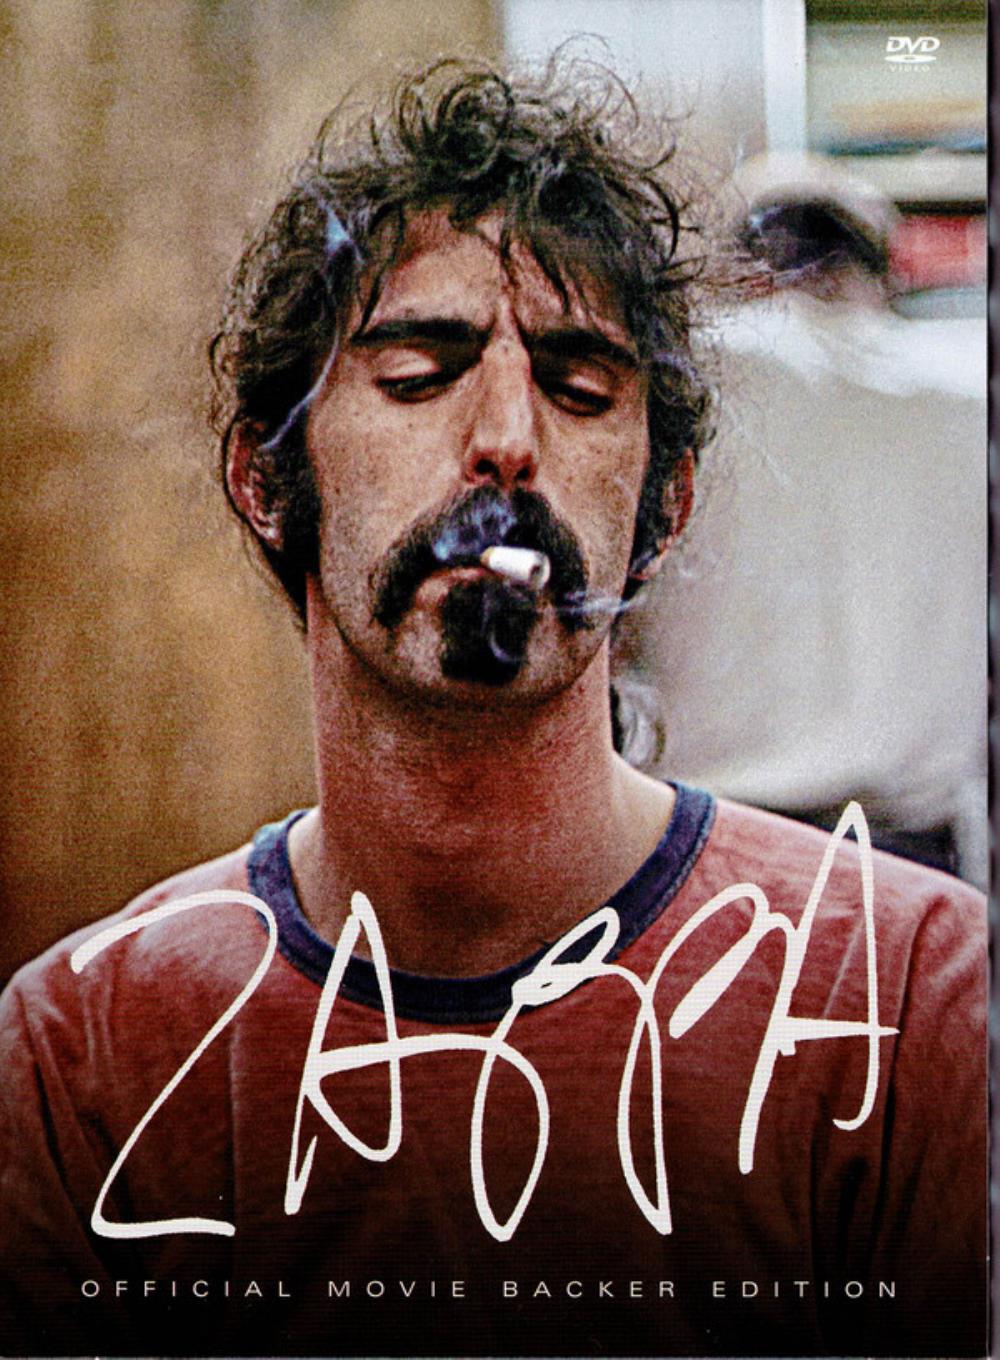 Frank Zappa Zappa album cover